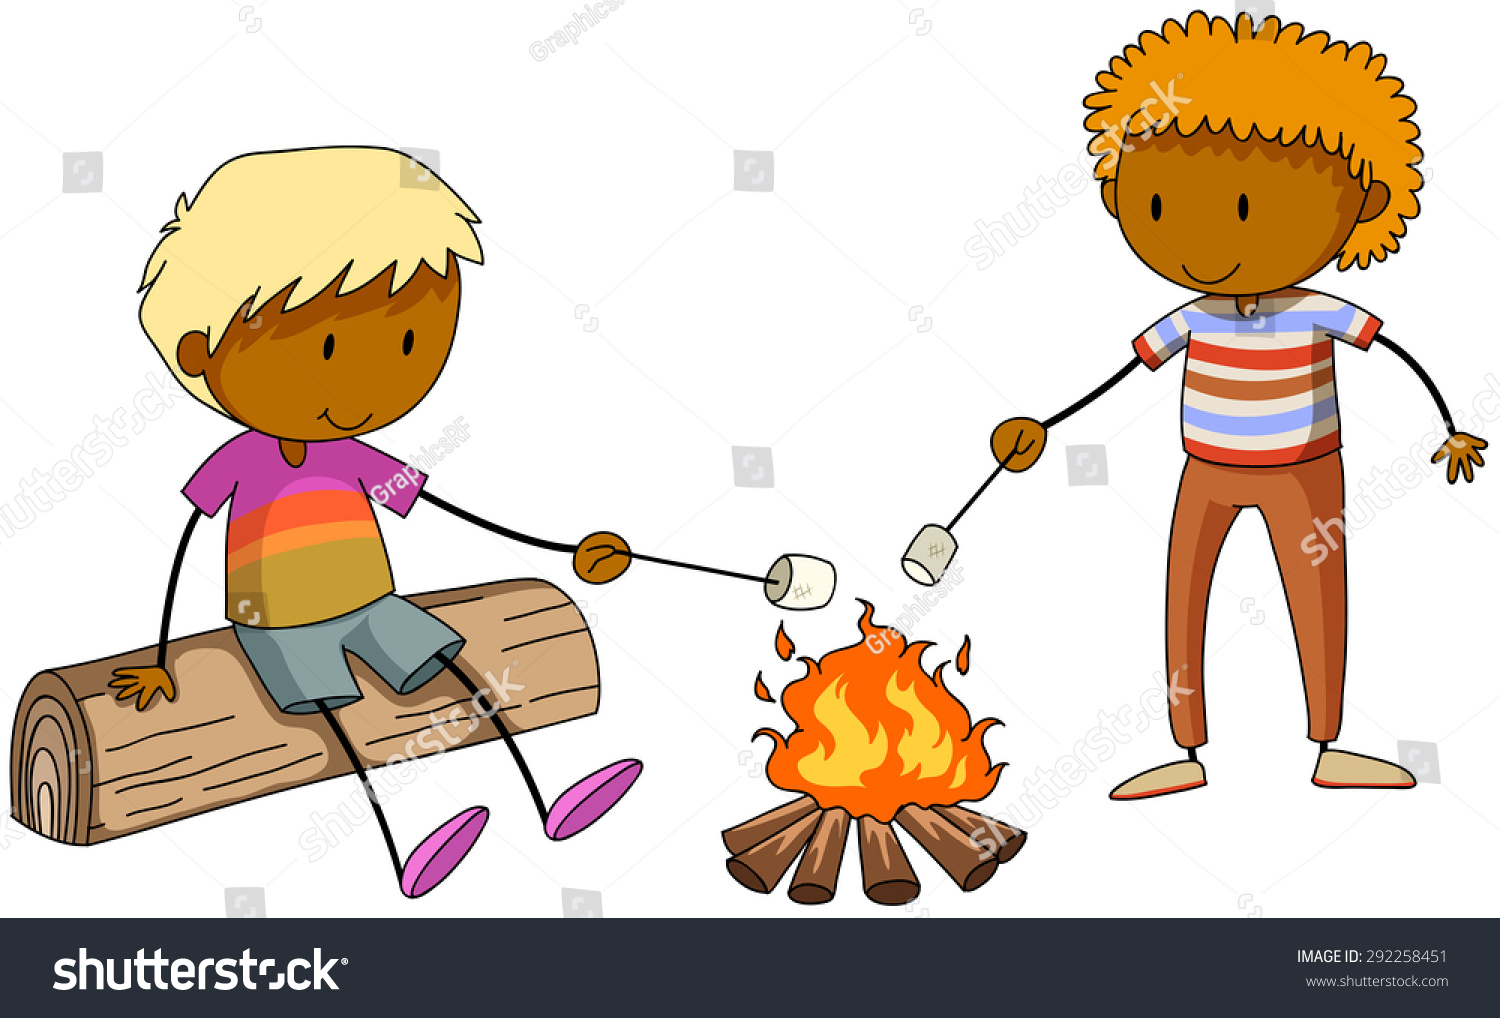 焚き火でマシュマロを燃やす2人の少年 のベクター画像素材 ロイヤリティフリー